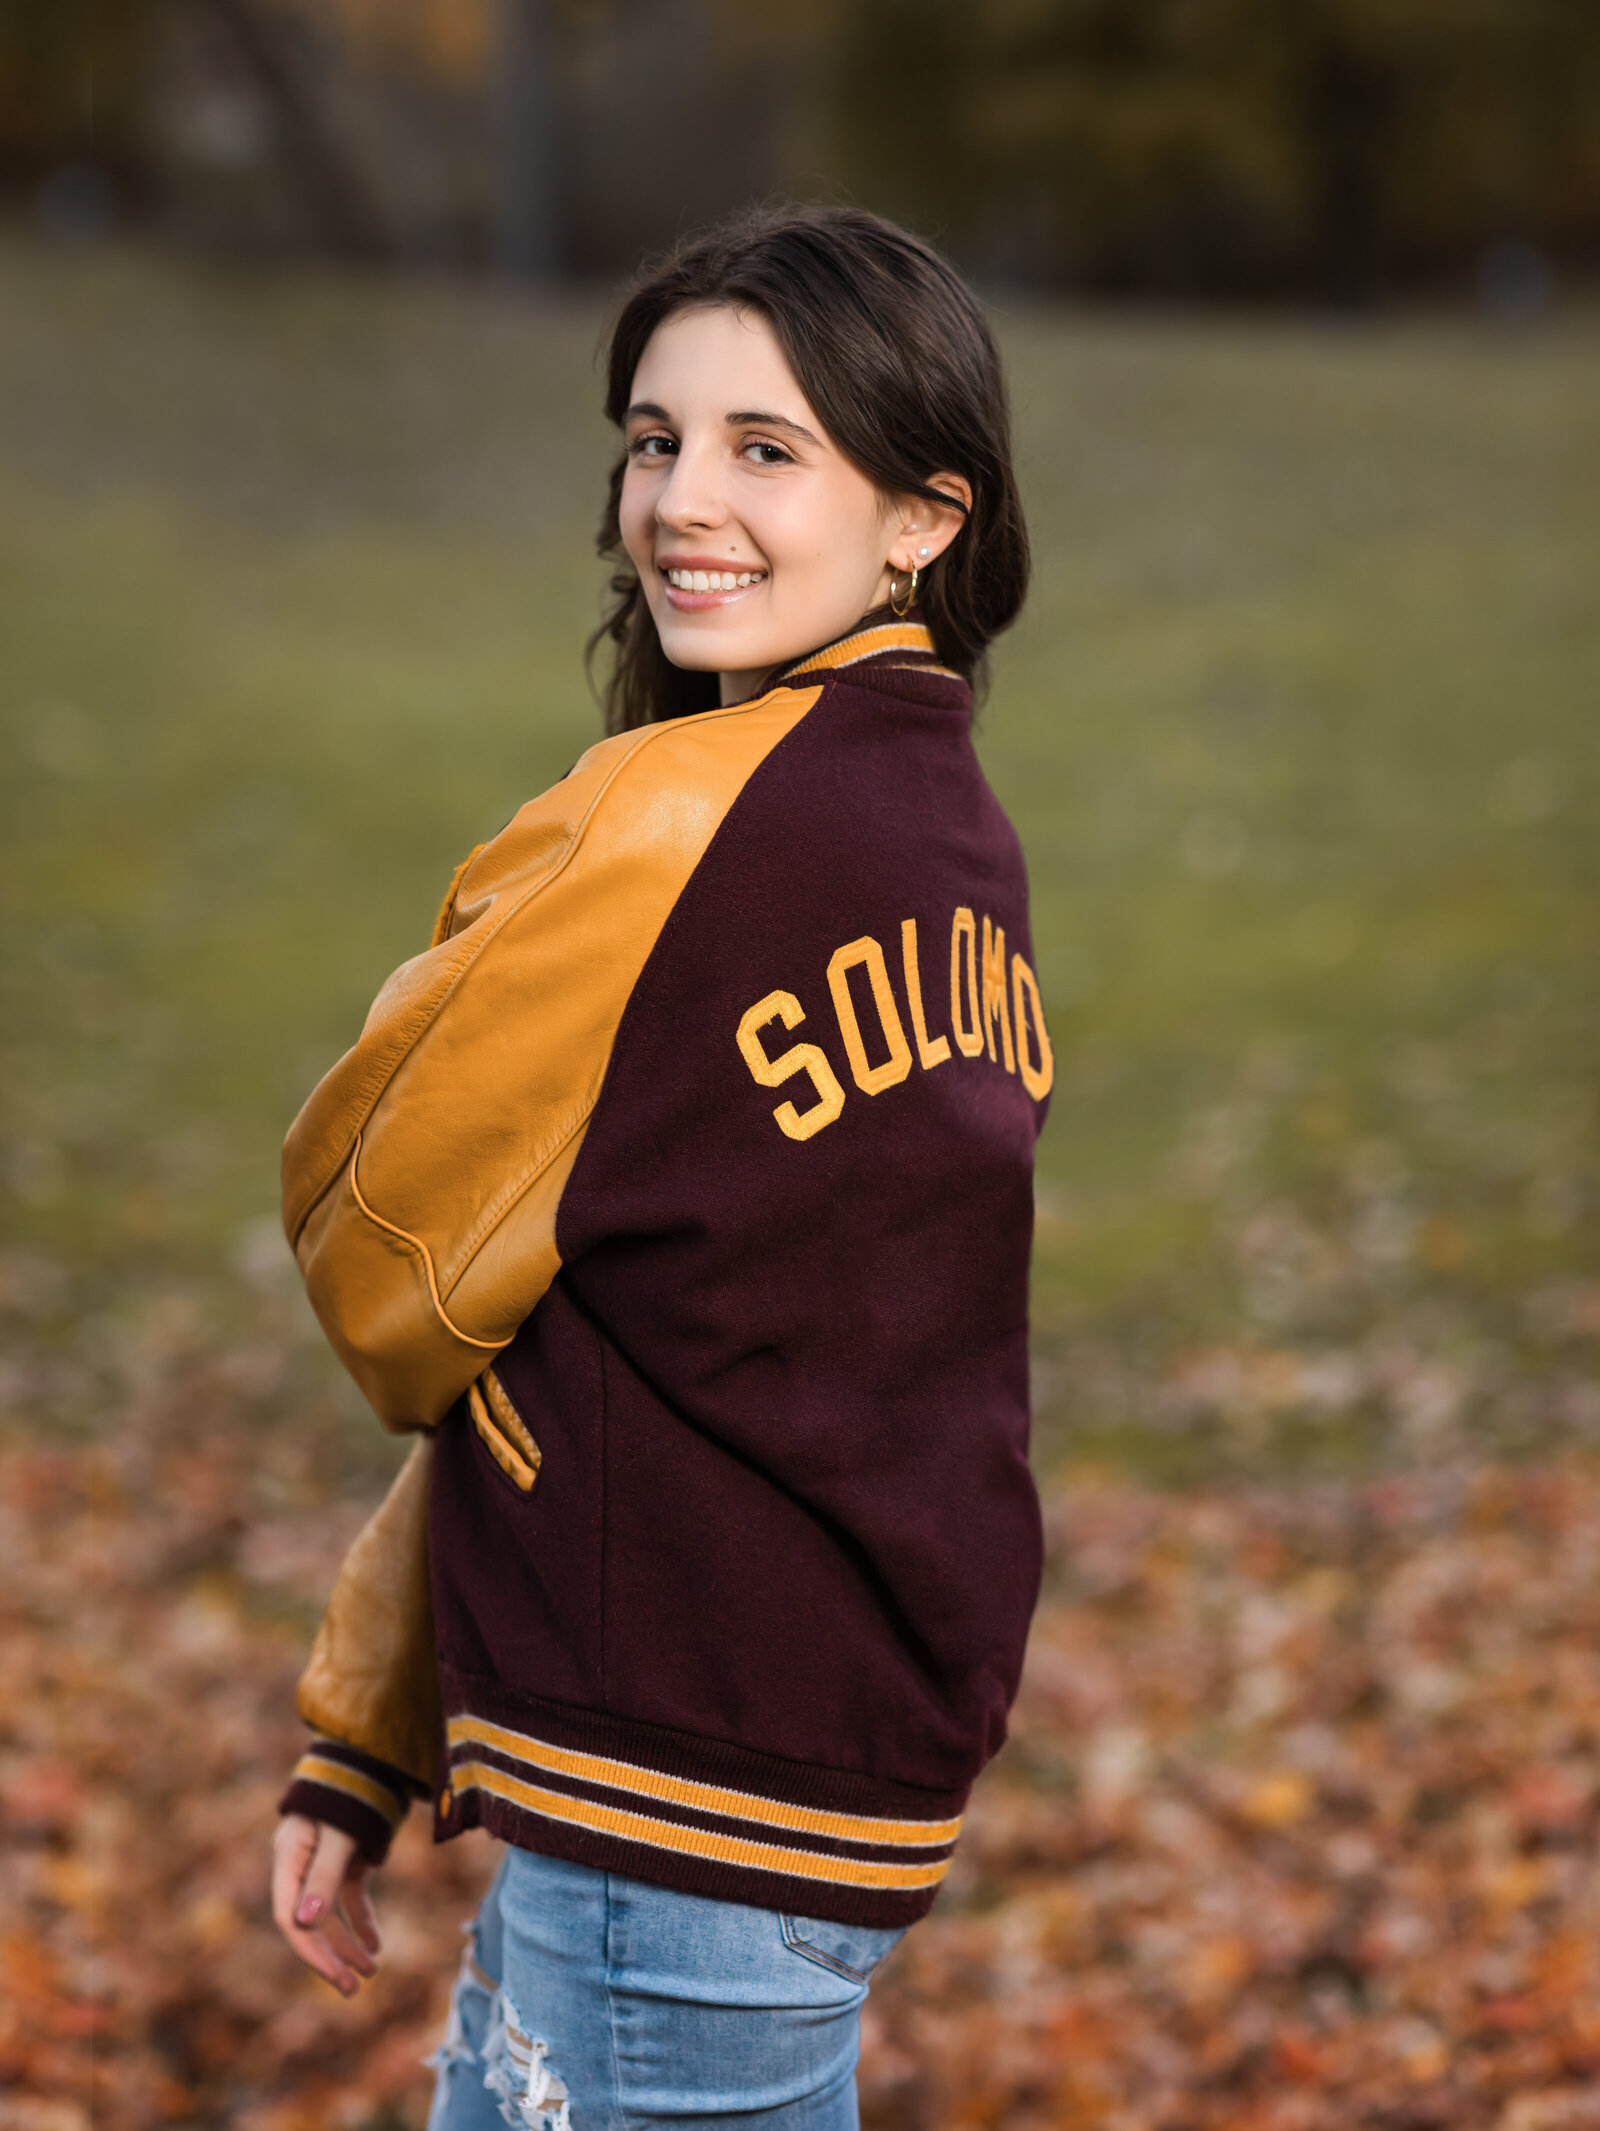 senior girl posing in letterman jacket for senior portraits Cleveland senior photographer